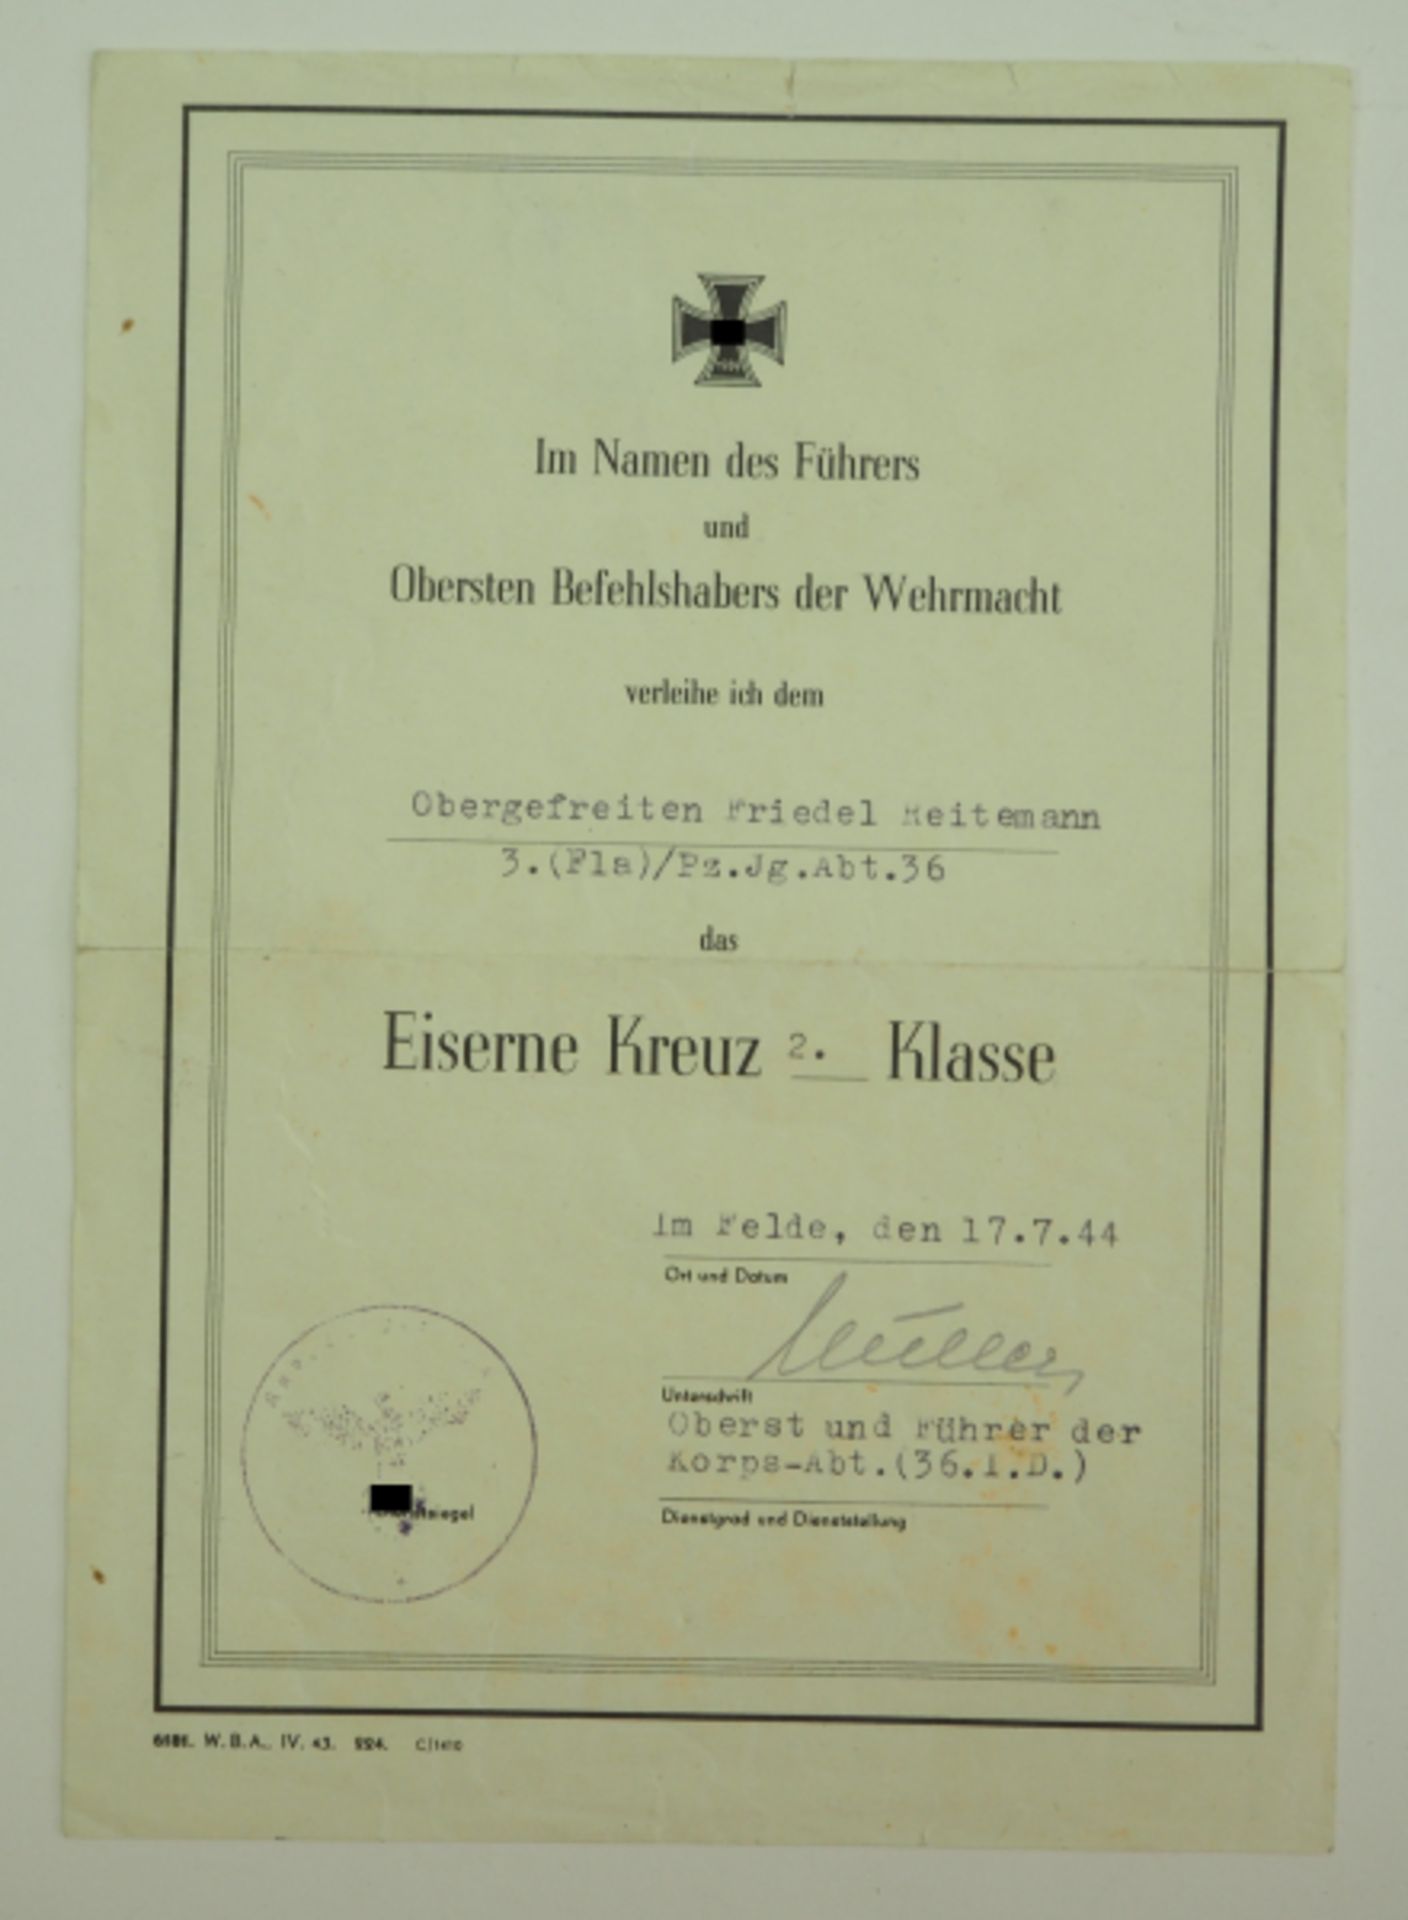 Eisernes Kreuz, 1939, 2. Klasse Urkunde für einen Obergefreiten der 3. (Fla)/ Pz.Jg.Abt. 36.